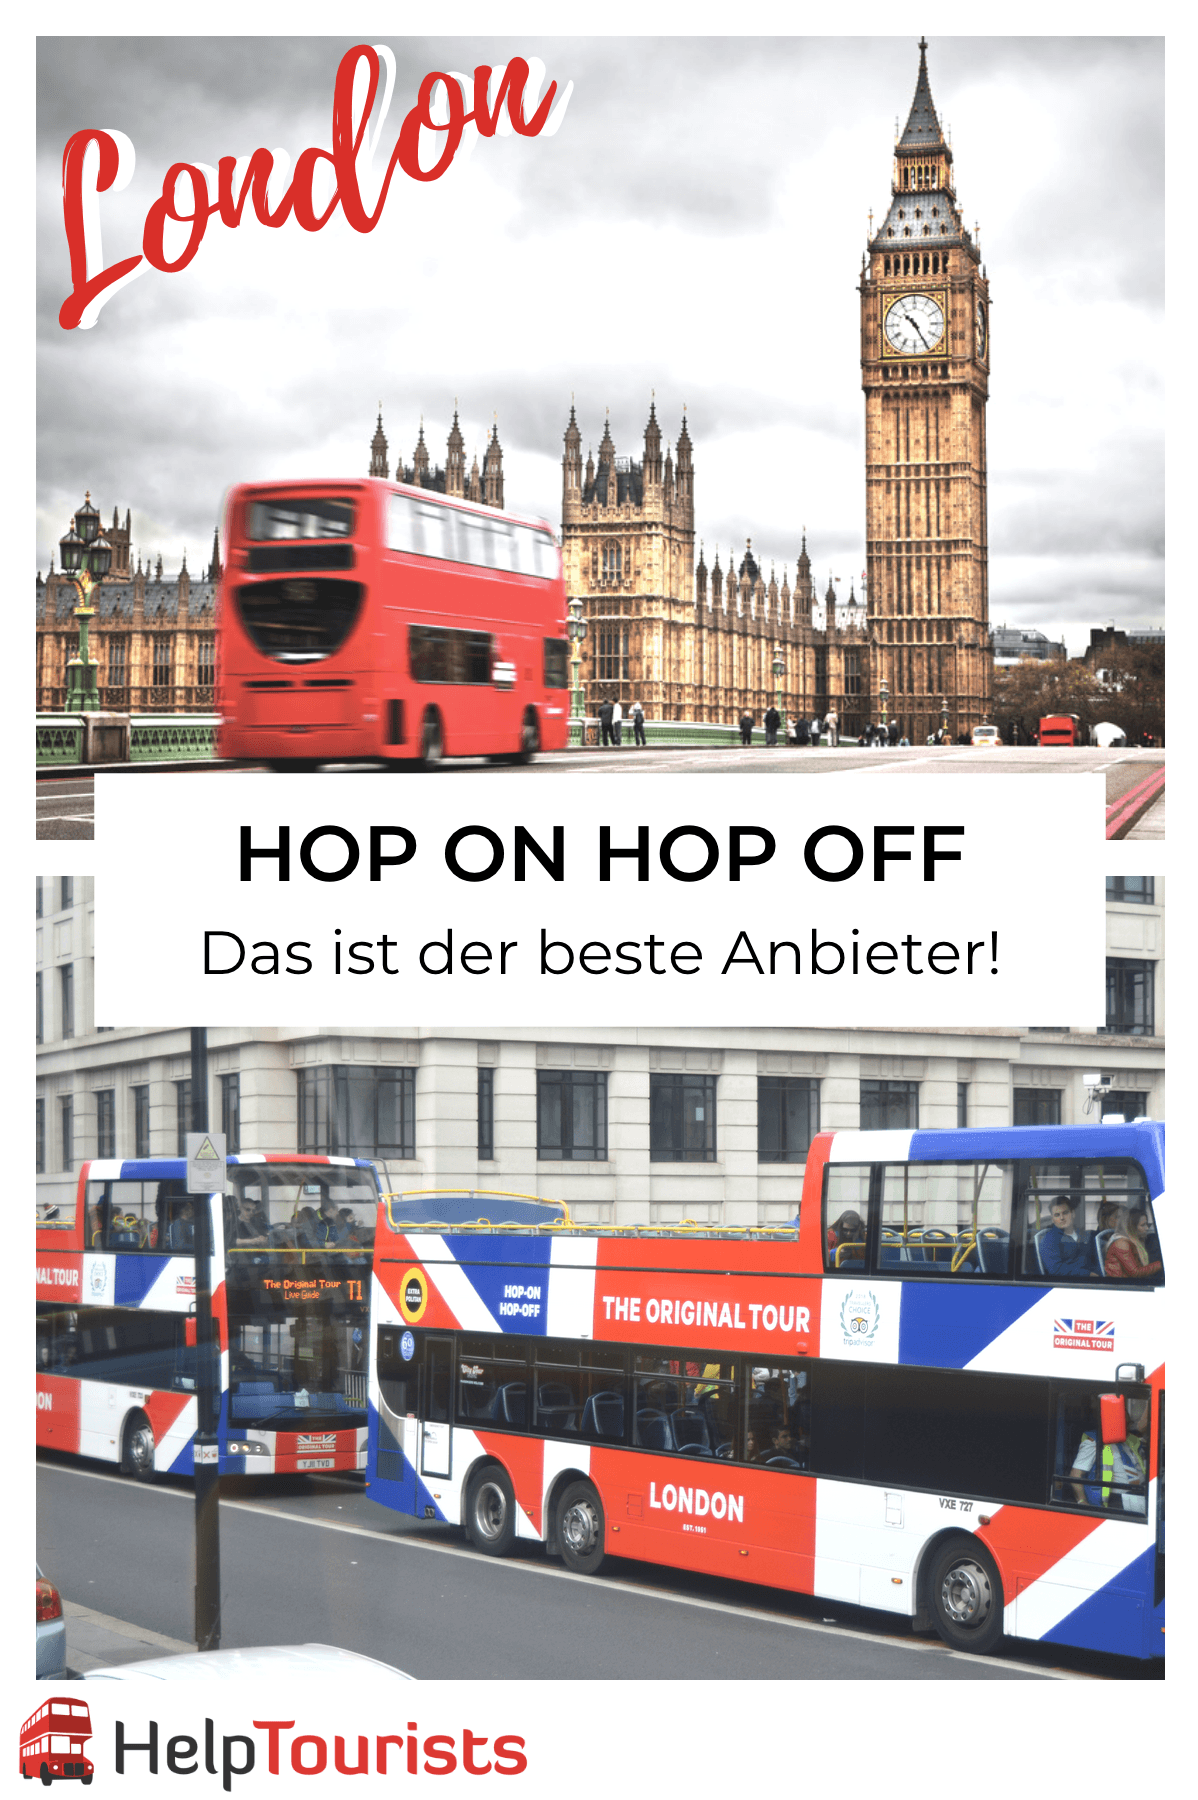 Hop on hop off London